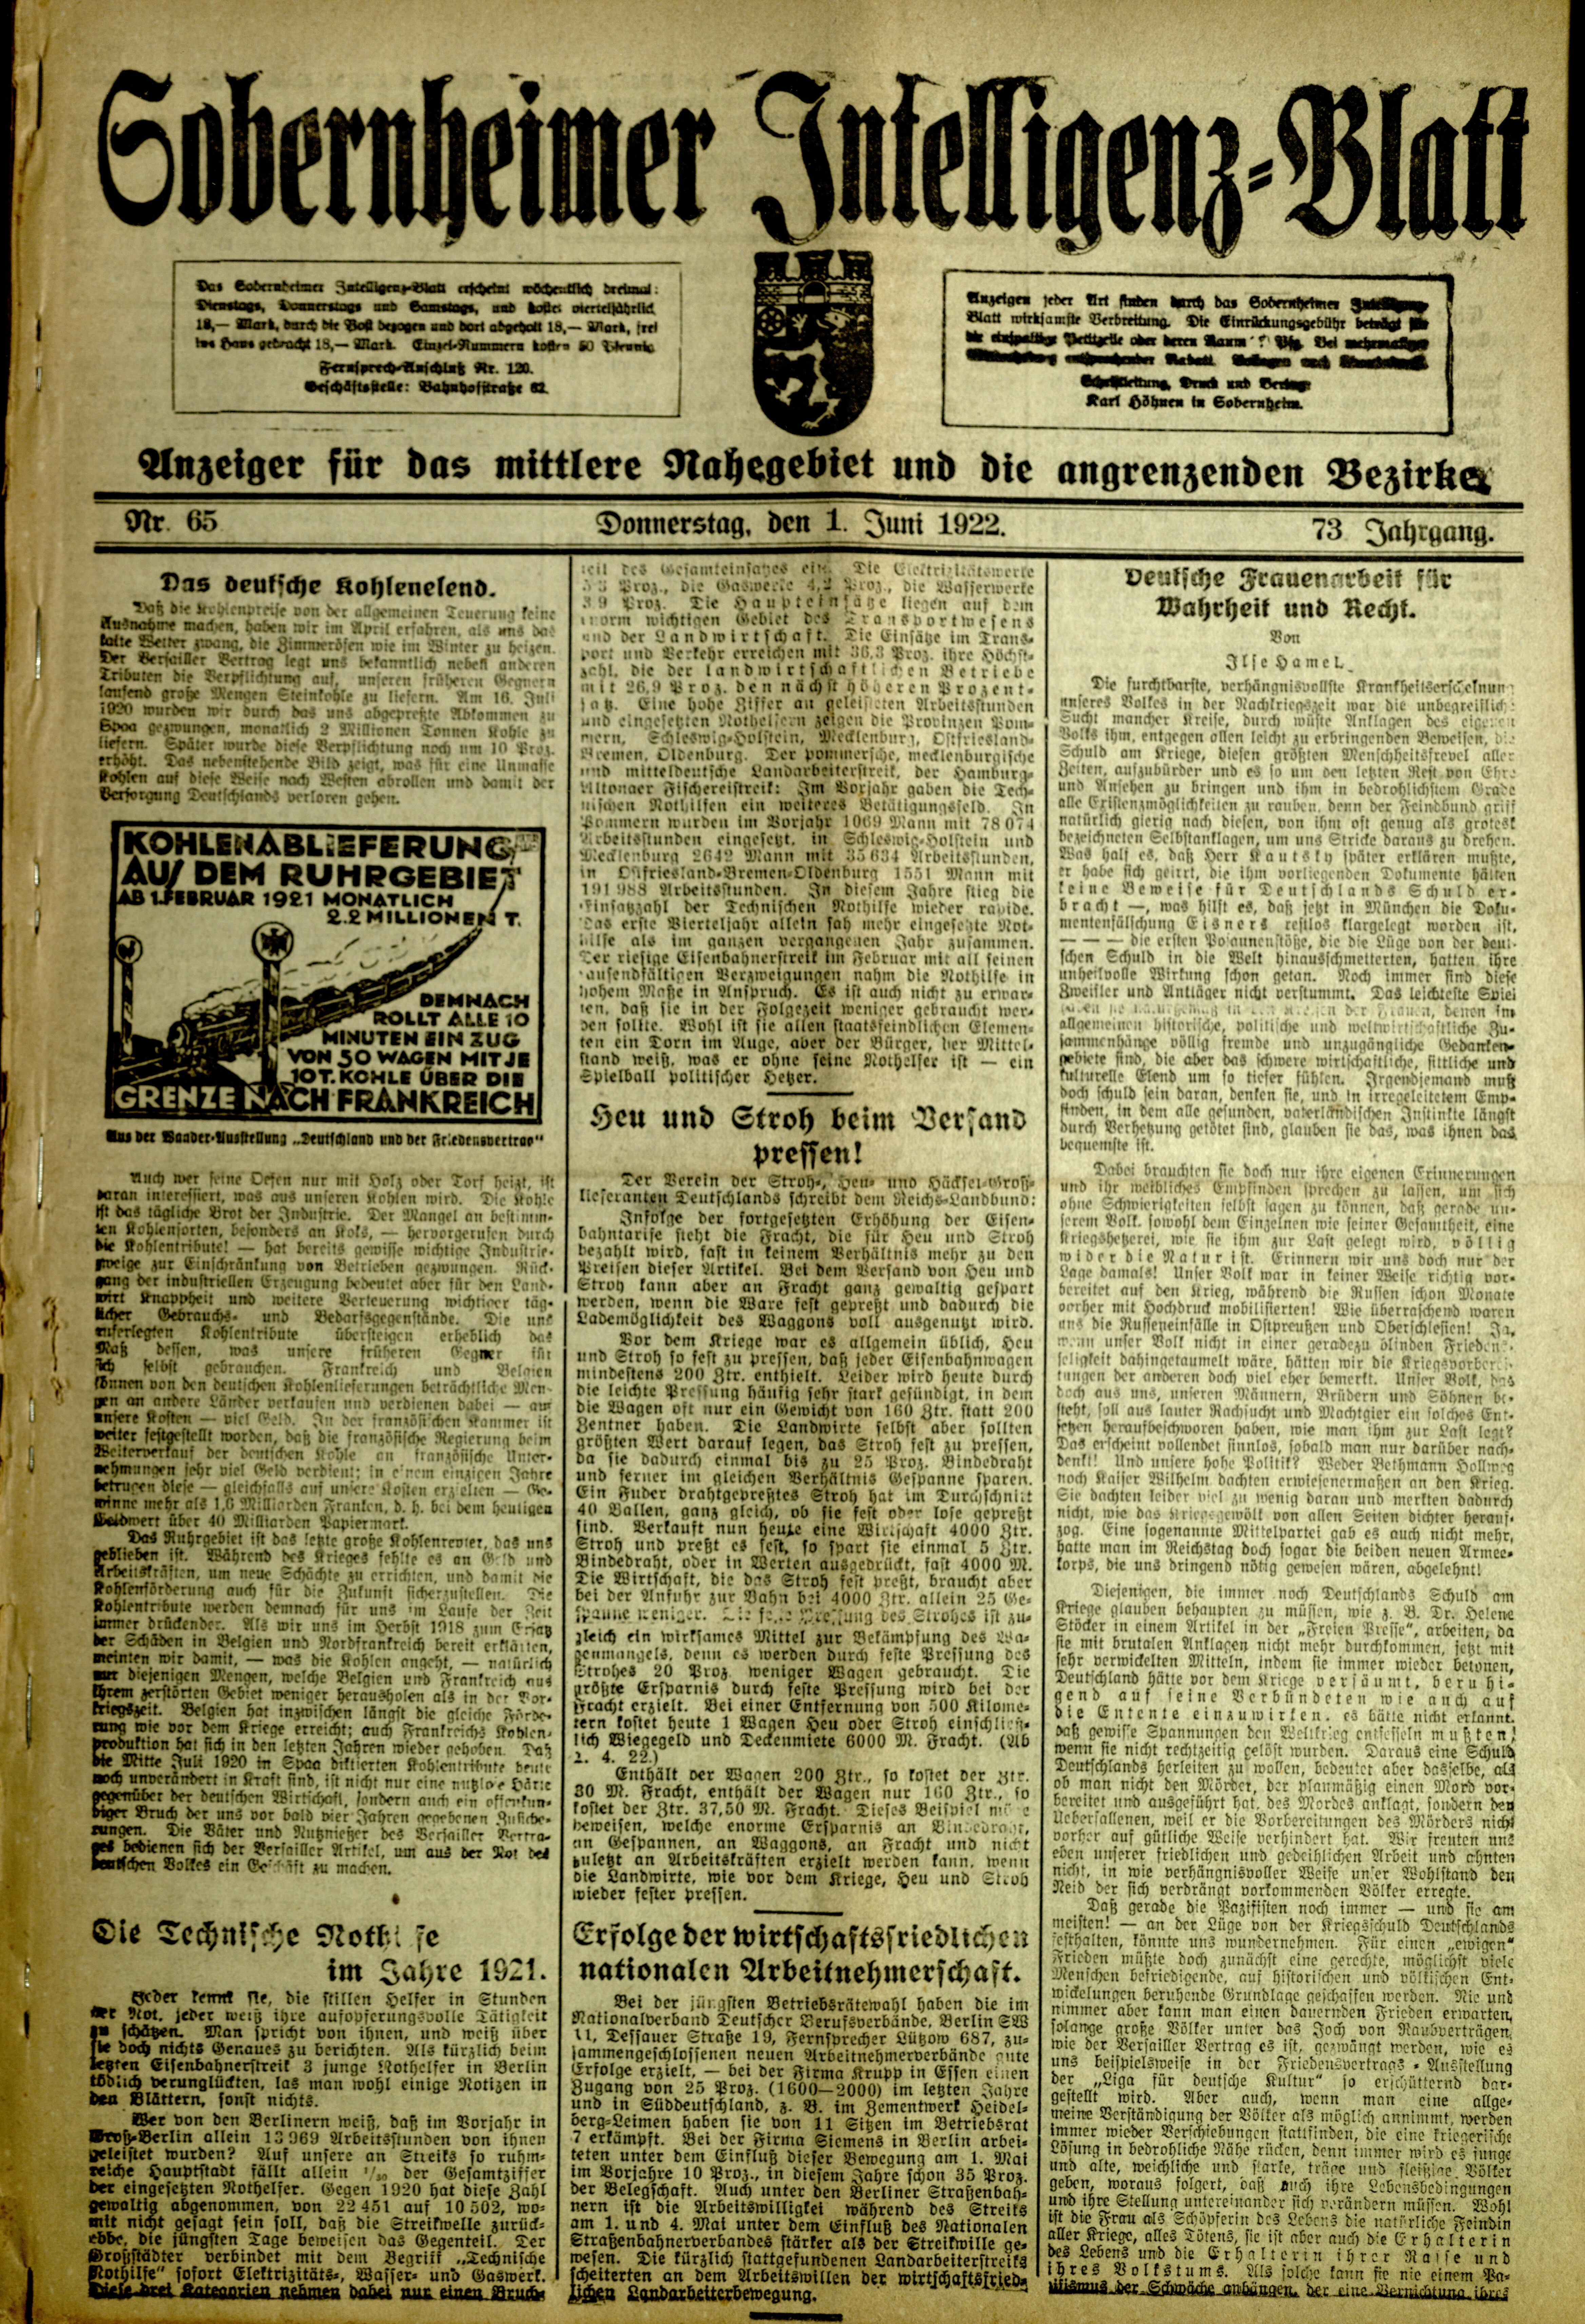 Zeitung: Sobernheimer Intelligenzblatt; Juni 1922, Jg. 73 Nr. 65 (Heimatmuseum Bad Sobernheim CC BY-NC-SA)